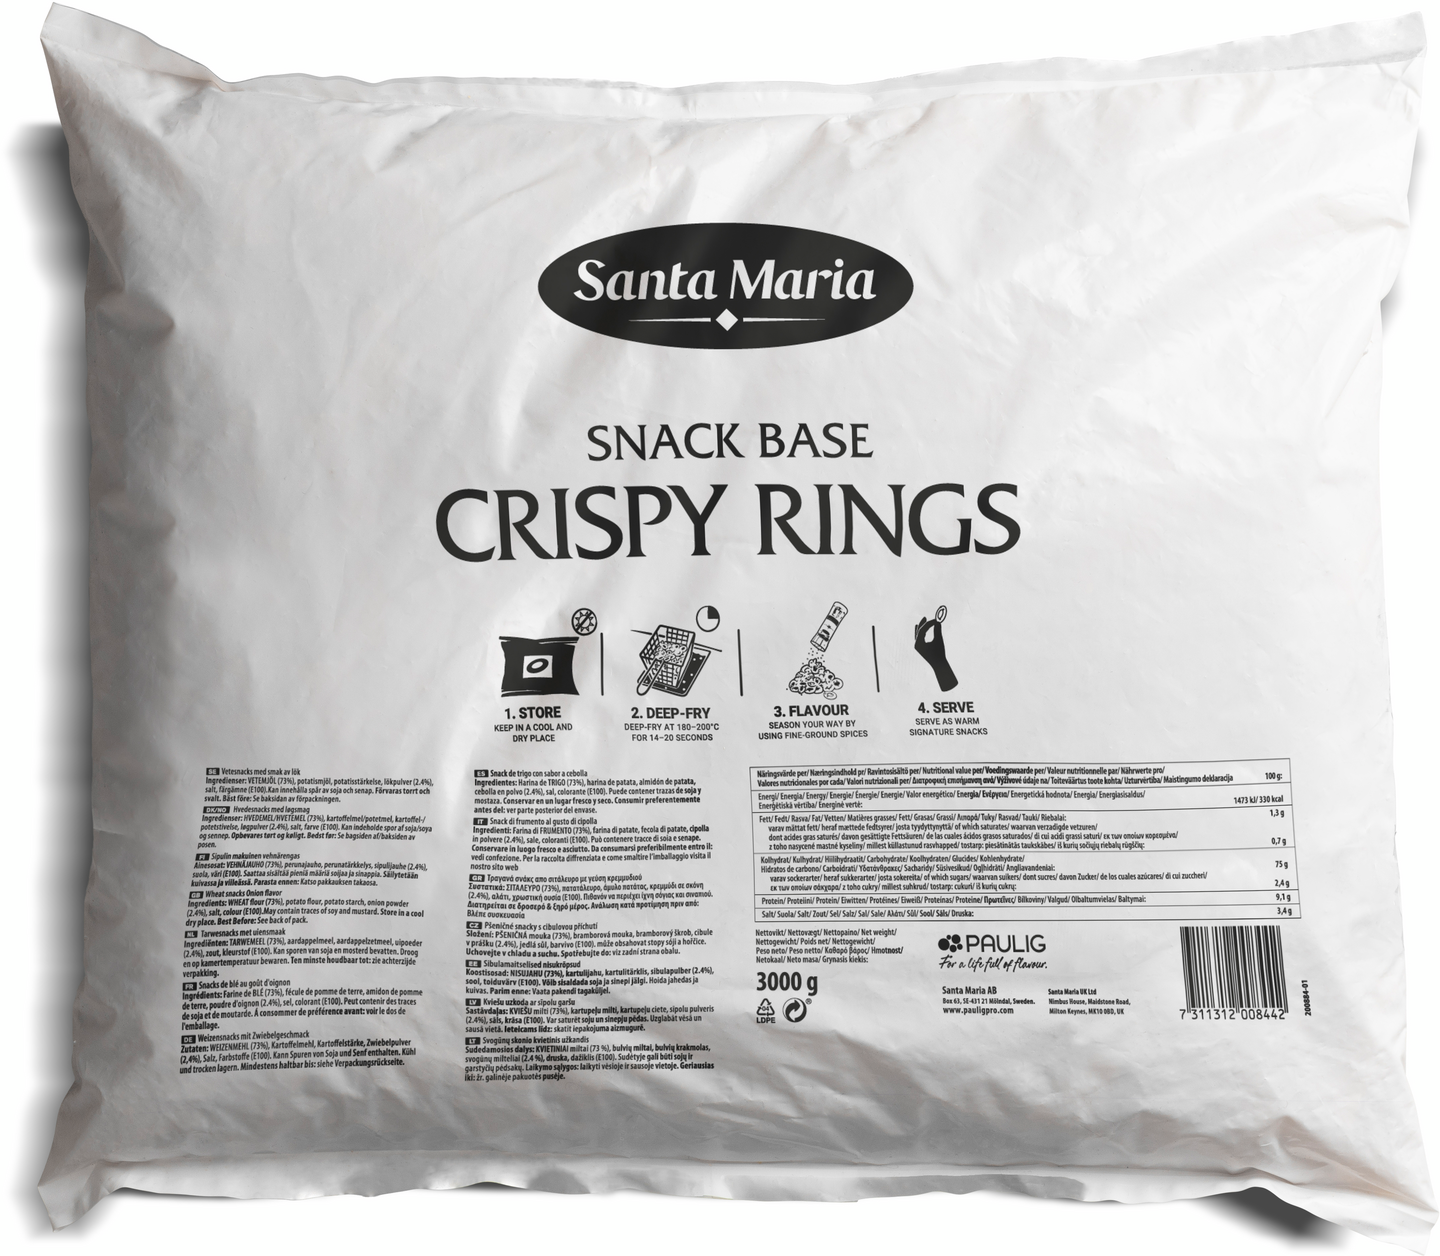 Santa Maria snack base crispy rings 3000g